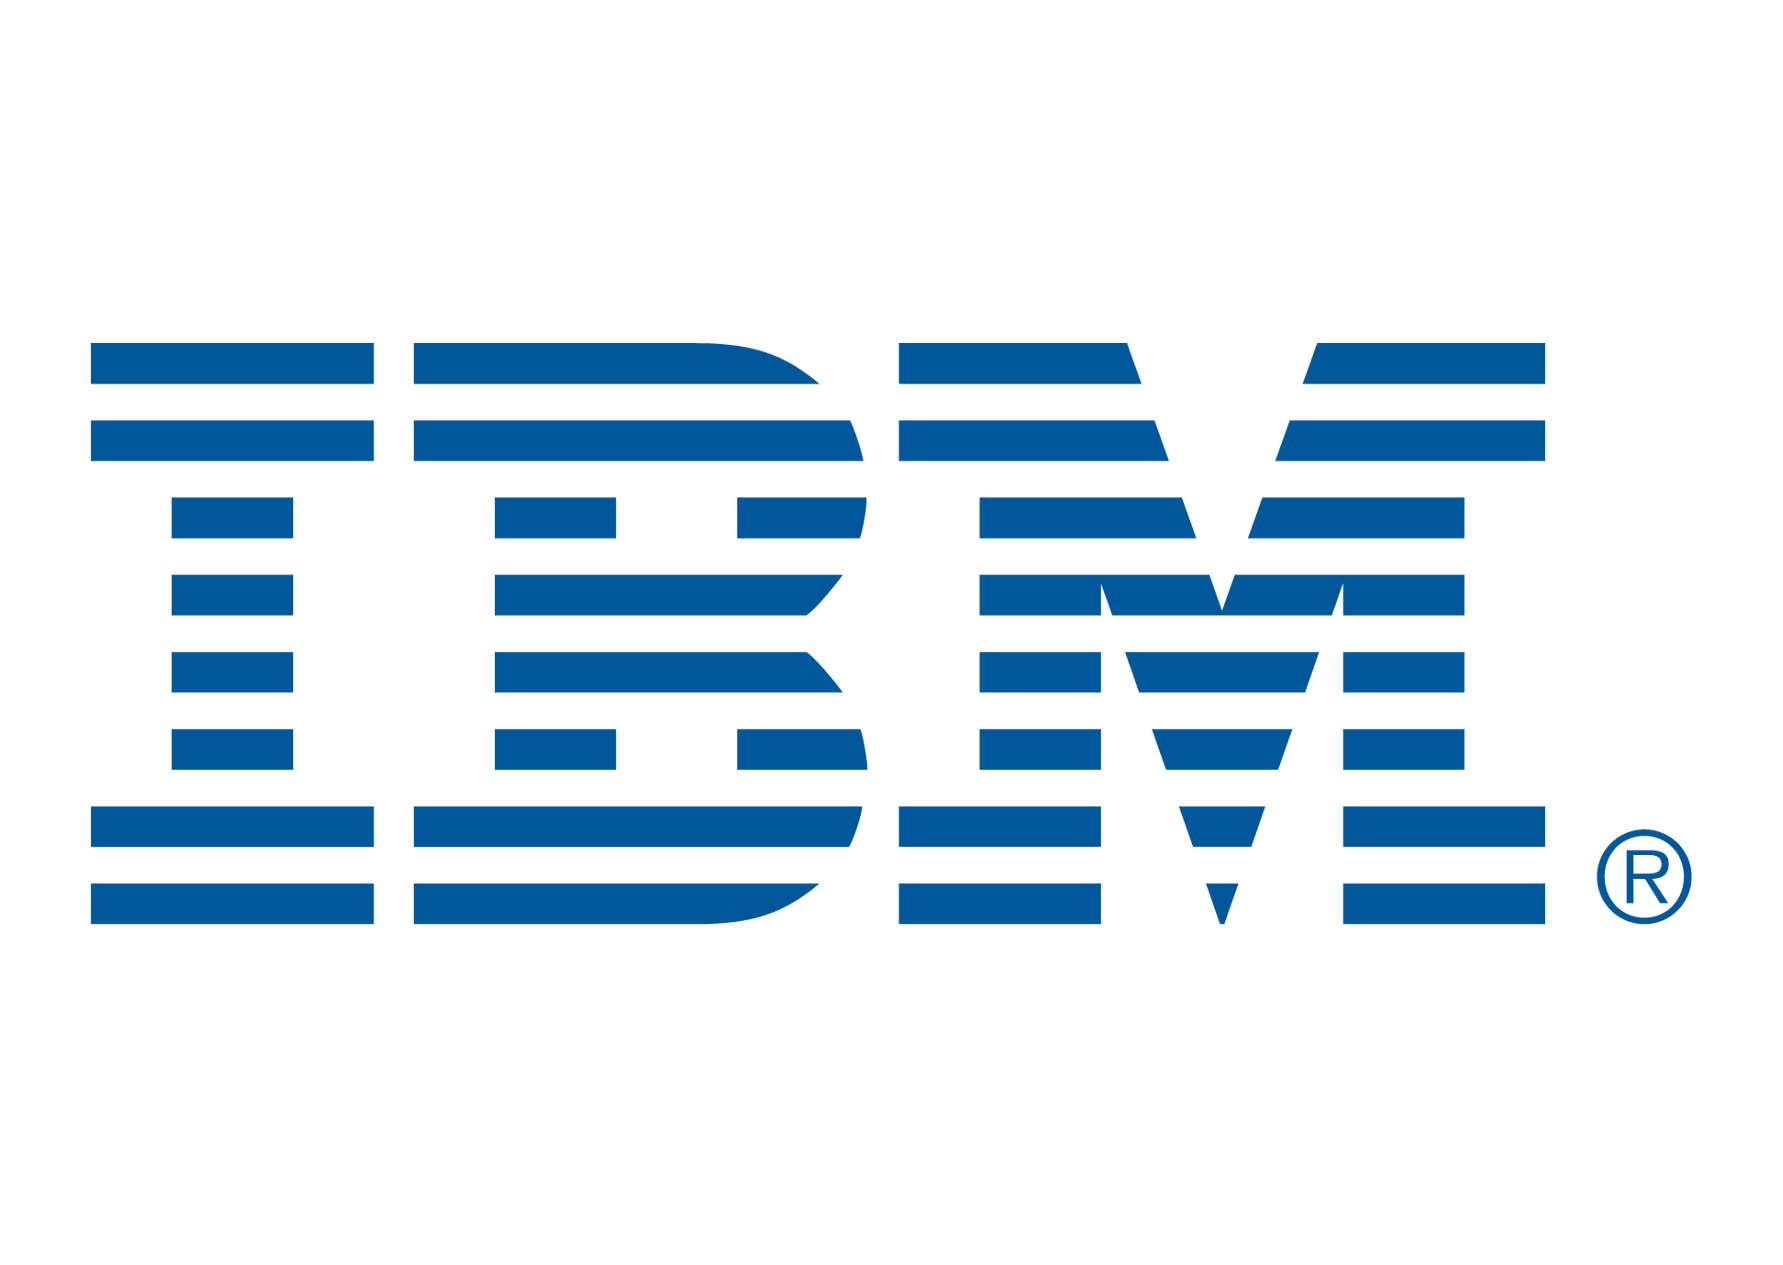 IBM Wave Analysis – 14 May, 2020